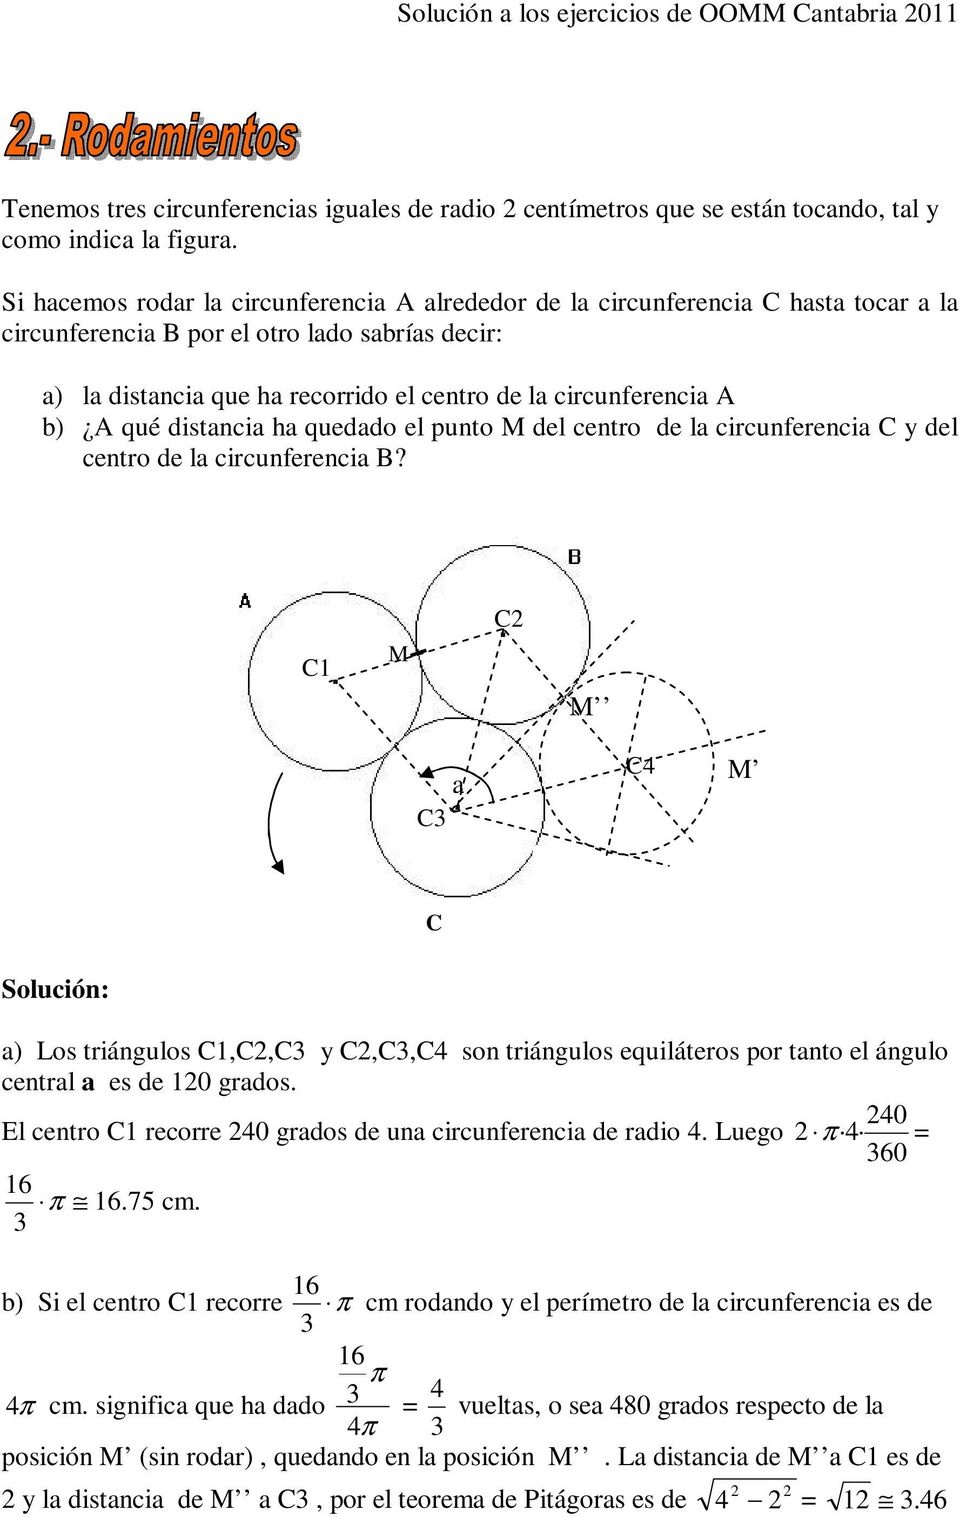 queddo el punto M del centro de l circunferenci C y del centro de l circunferenci B?